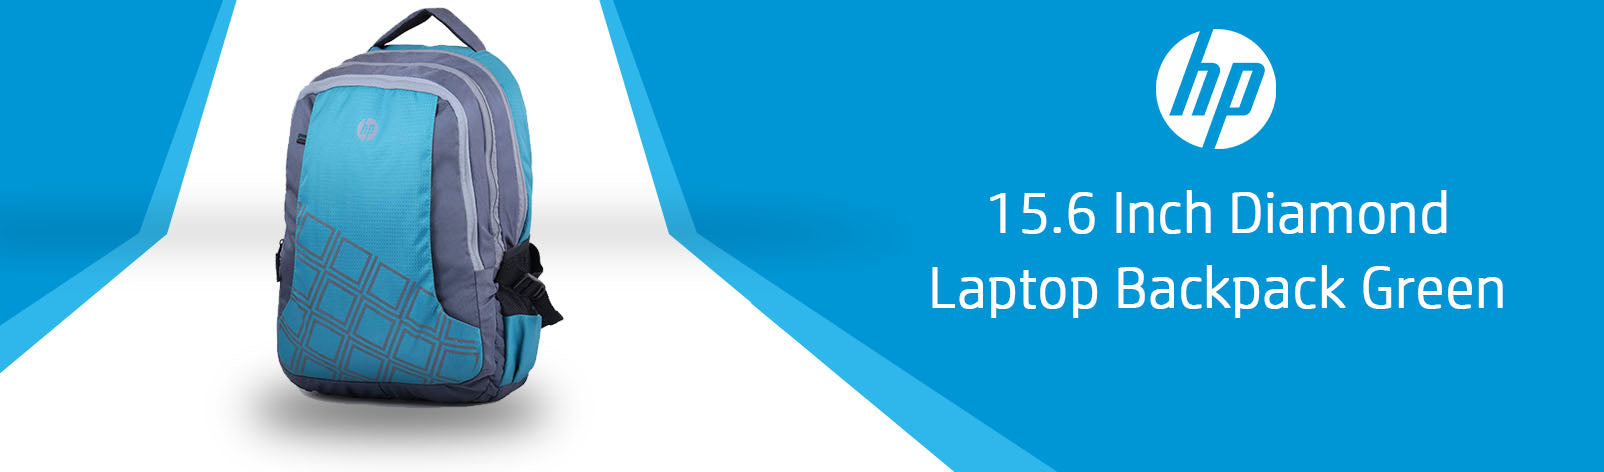 HP 15.6 इंच डायमंड लैपटॉप बैकपैक (हरा, 4ZG31PA)